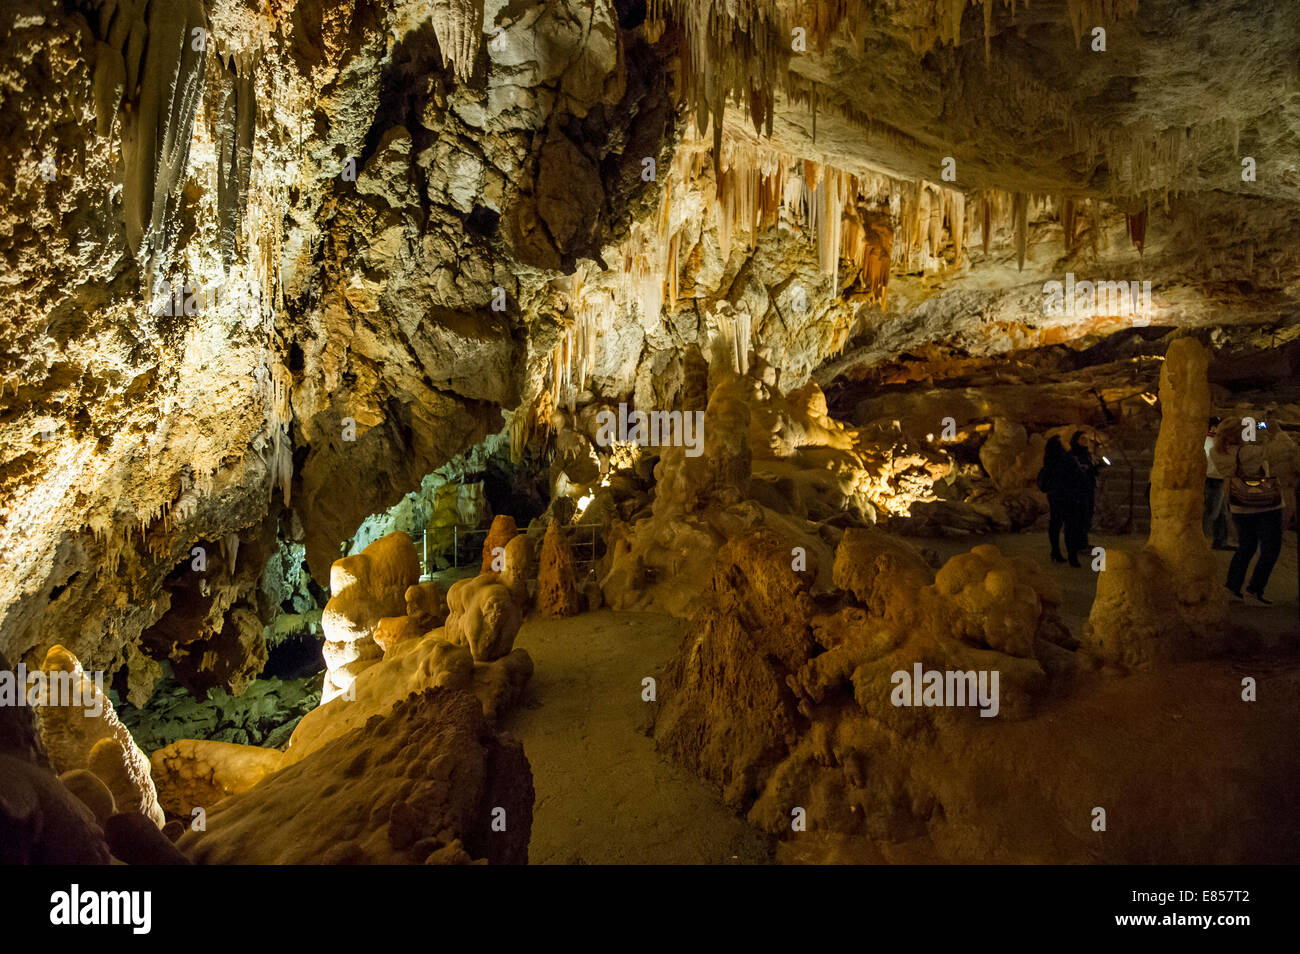 Grotte de stalactites, les grottes de Borgio Verezzi, Borgio Verezzi, Province de Savone, ligurie, italie Banque D'Images